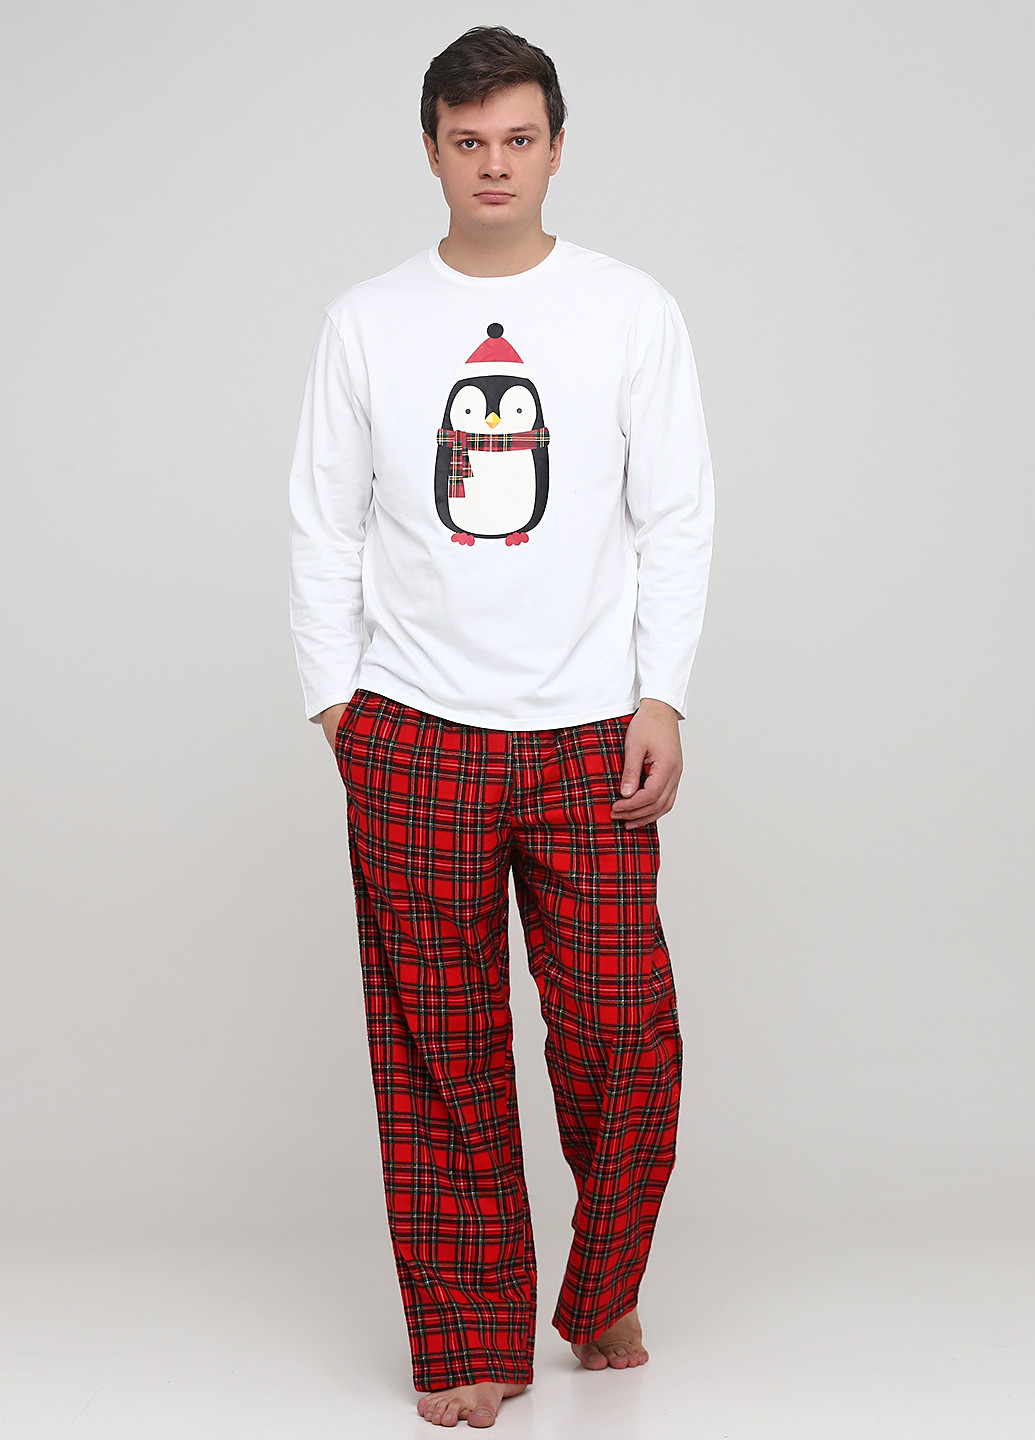 Пижама (лонгслив, брюки) Signature лонгслив + брюки рисунок красная домашняя трикотаж, хлопок